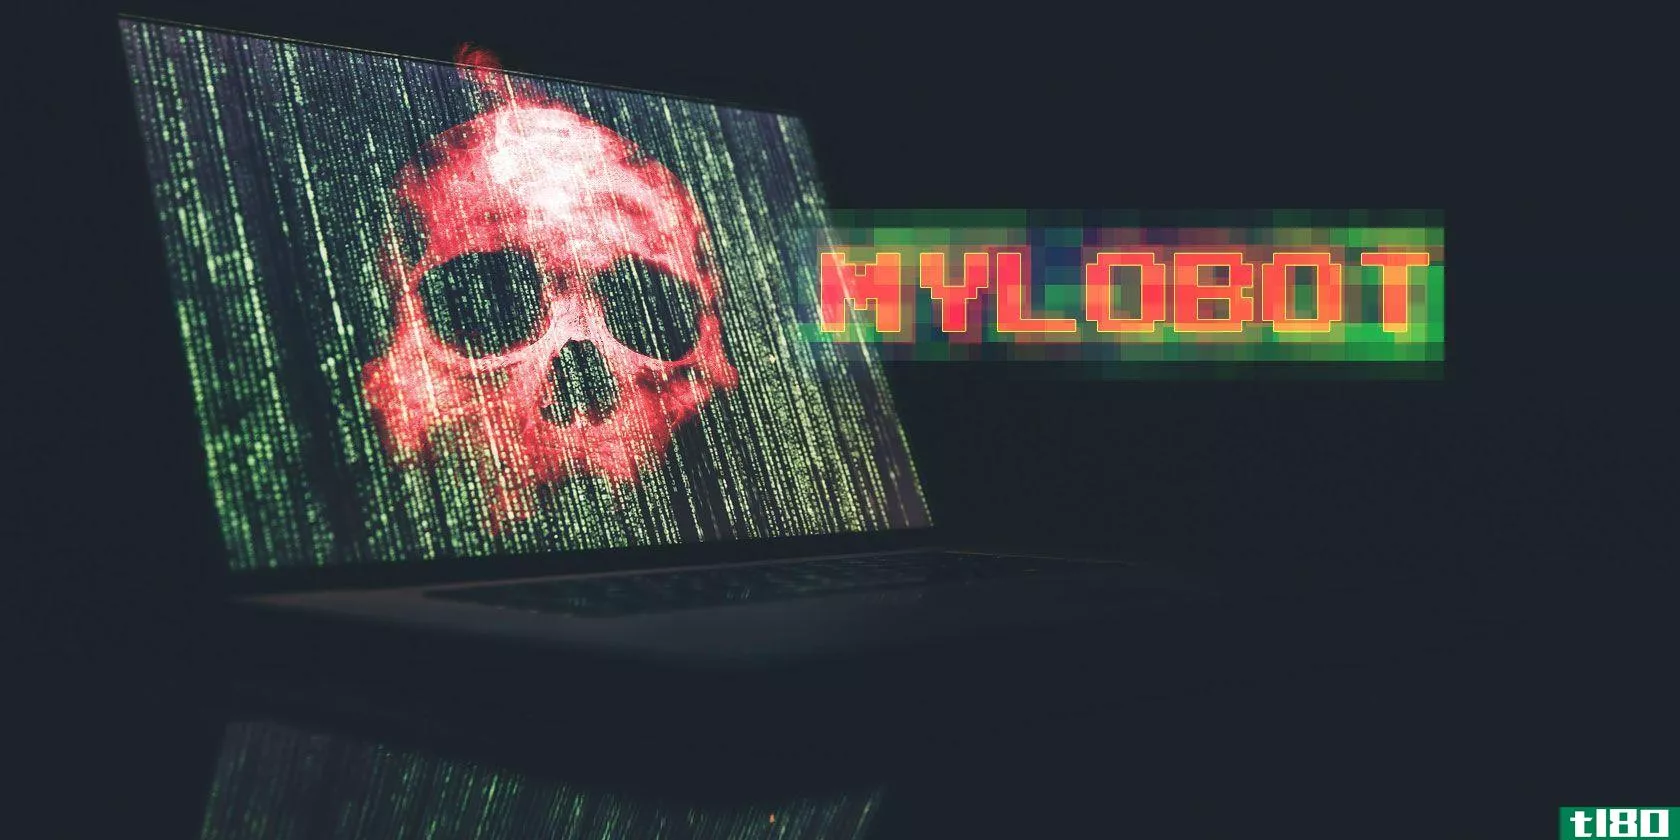 mylobot-malware